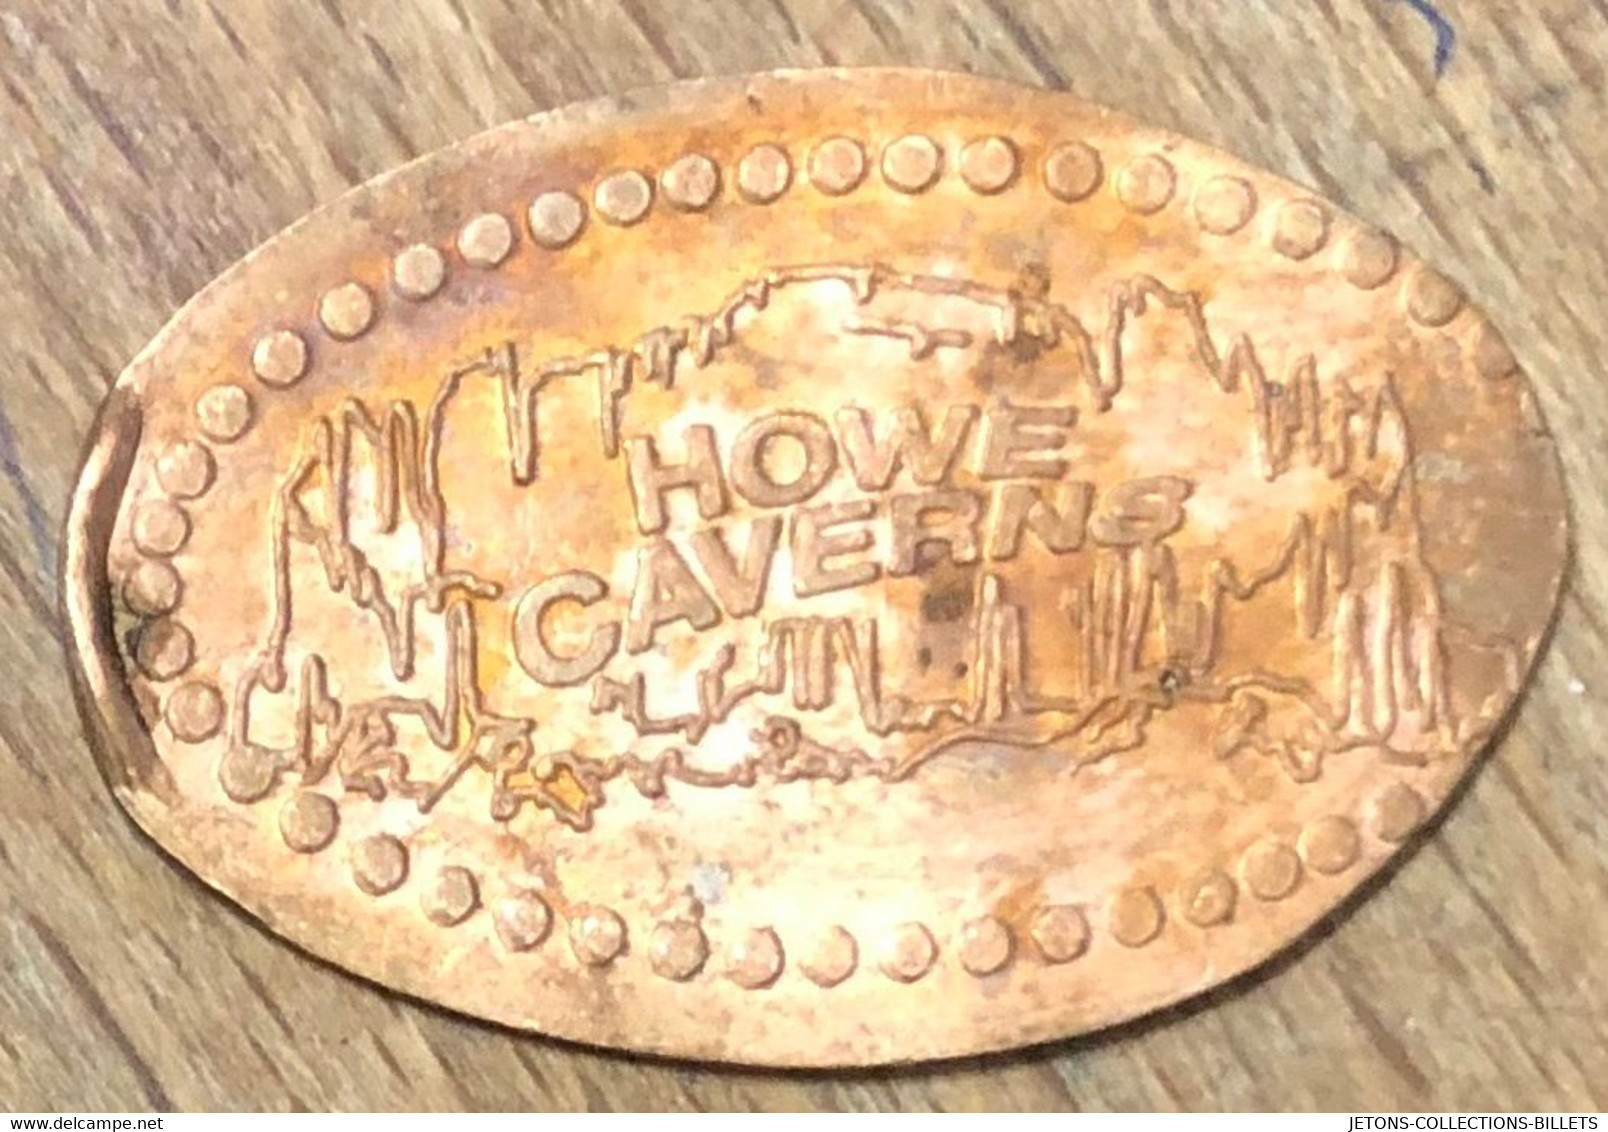 ÉTATS-UNIS USA HOWE CAVERNS PIÈCE ÉCRASÉE PENNY ELONGATED COIN MEDAILLE TOURISTIQUE MEDALS TOKENS - Souvenirmunten (elongated Coins)